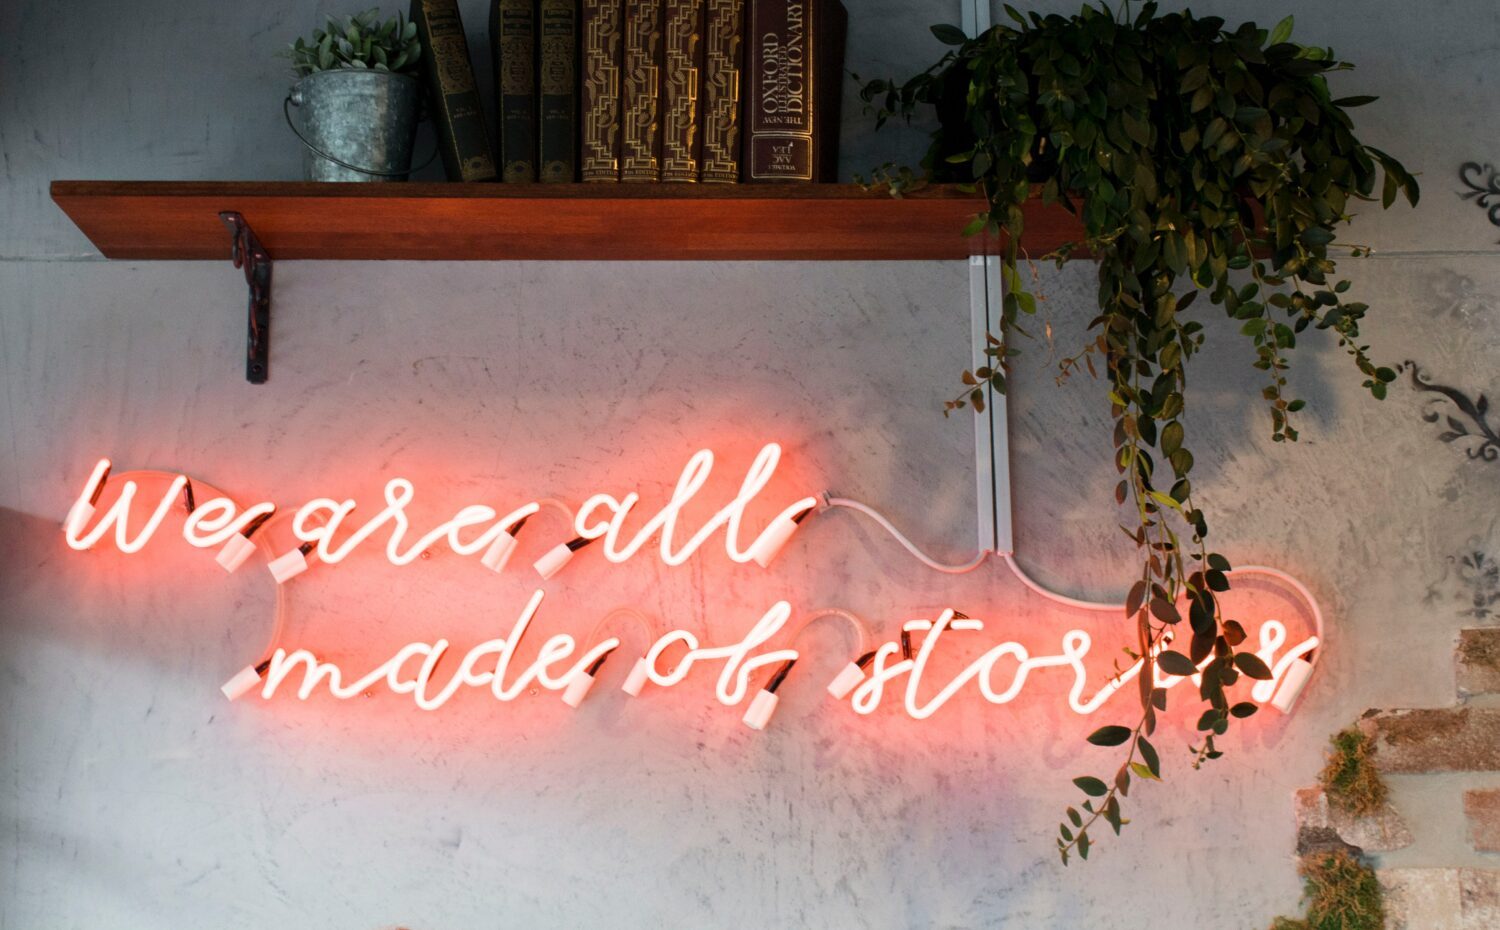 Ein Neonschild mit der Aufschrift "We are all made of stories"